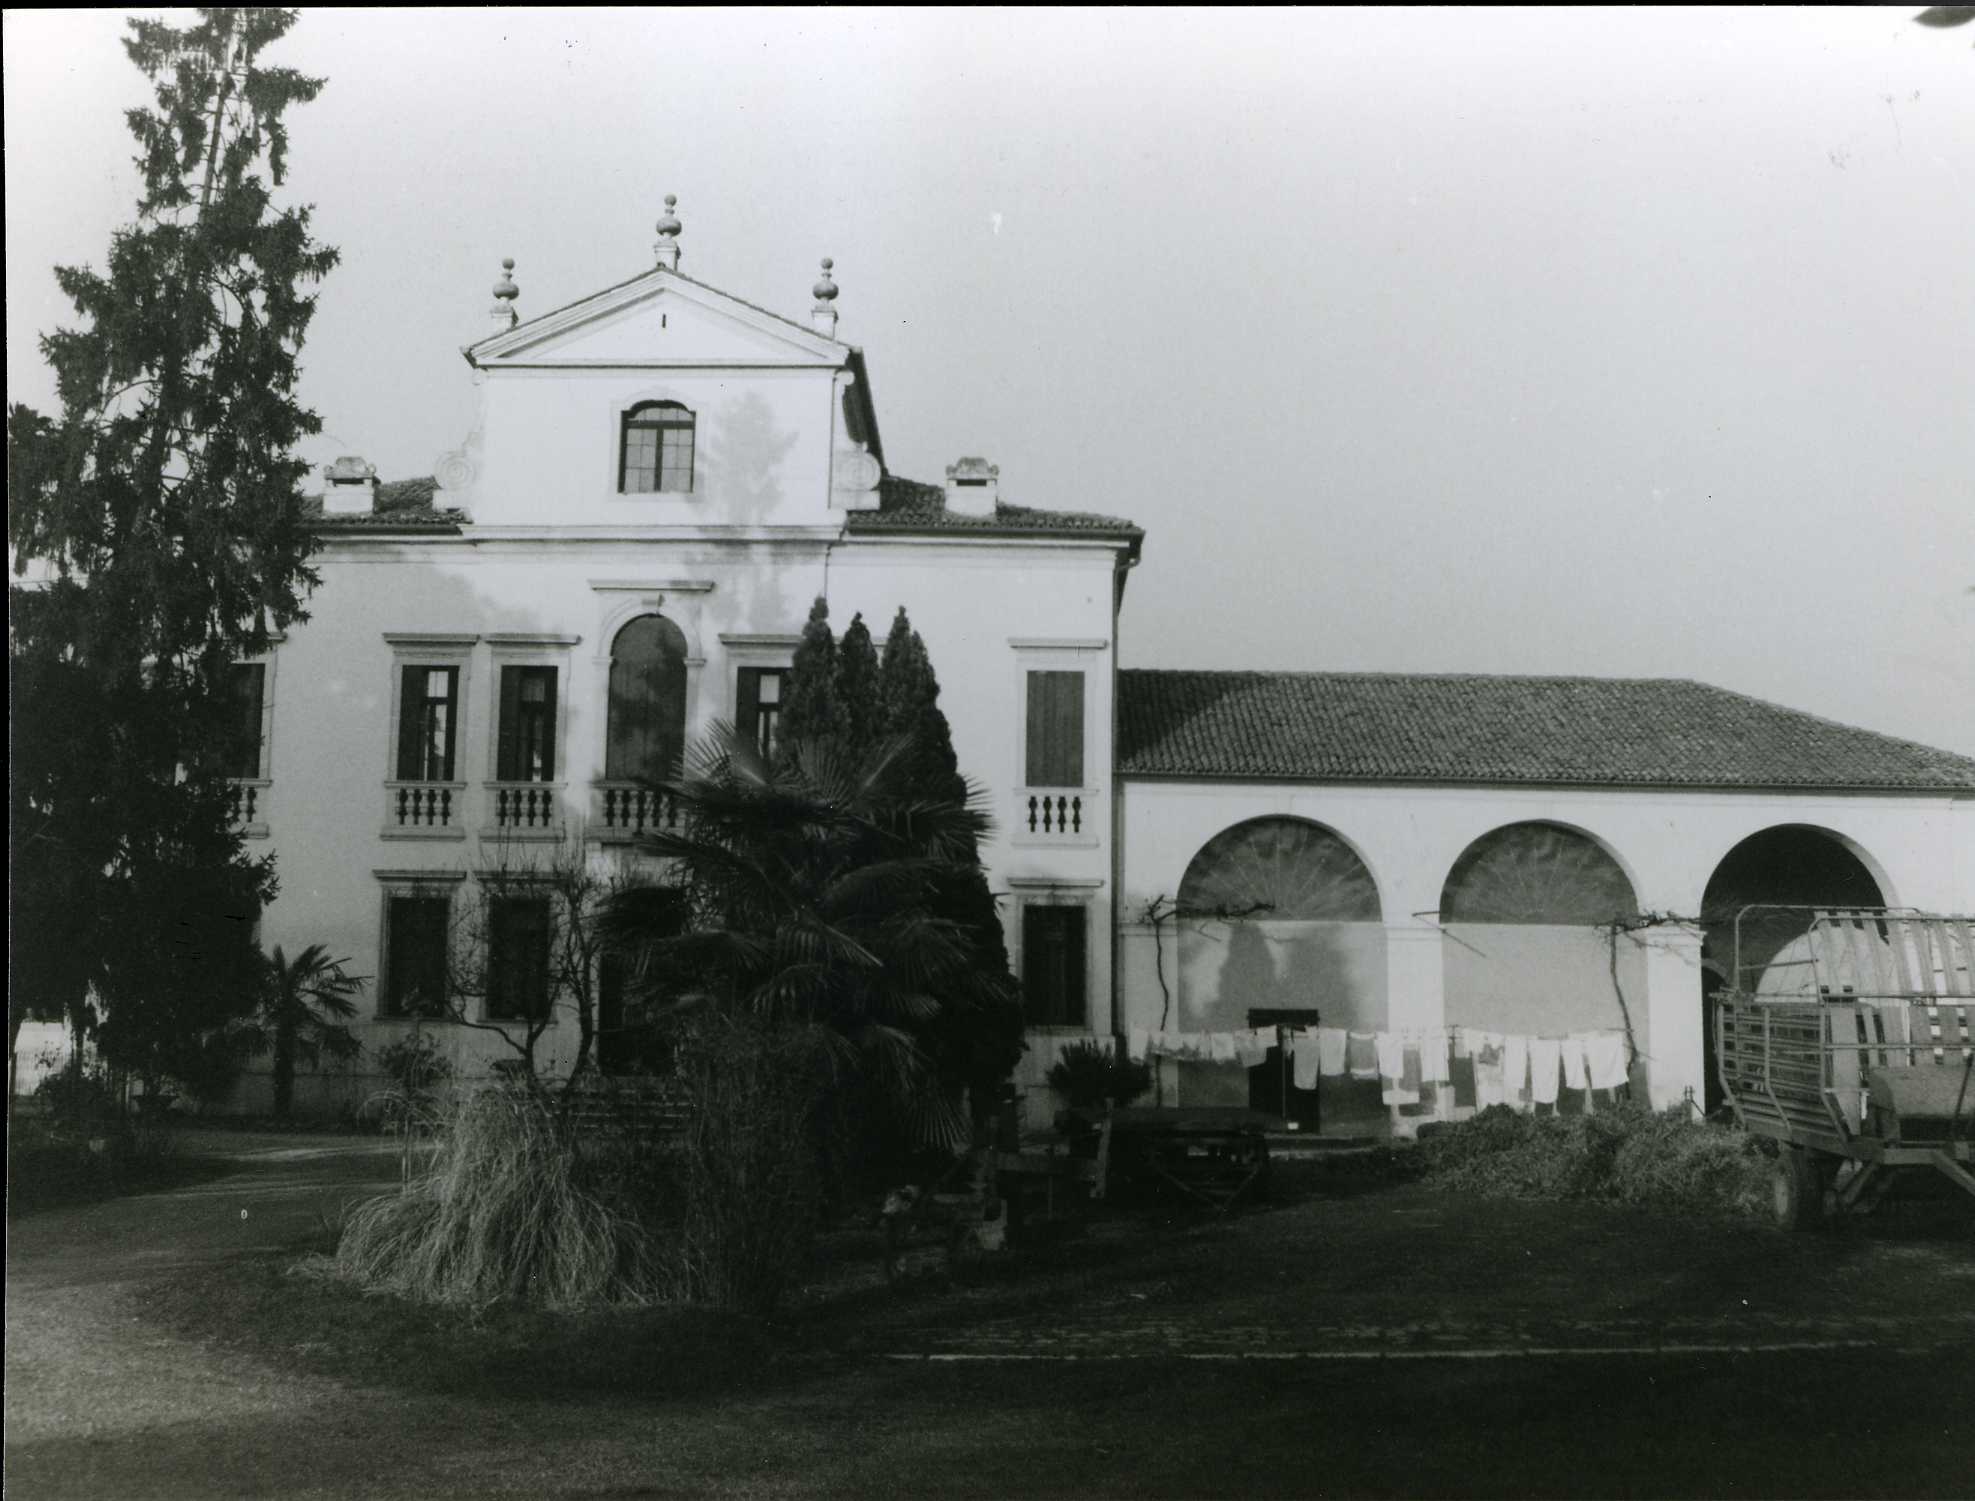 Villa Rigon (villa, nobiliare) - Quinto Vicentino (VI)  (XVIII)